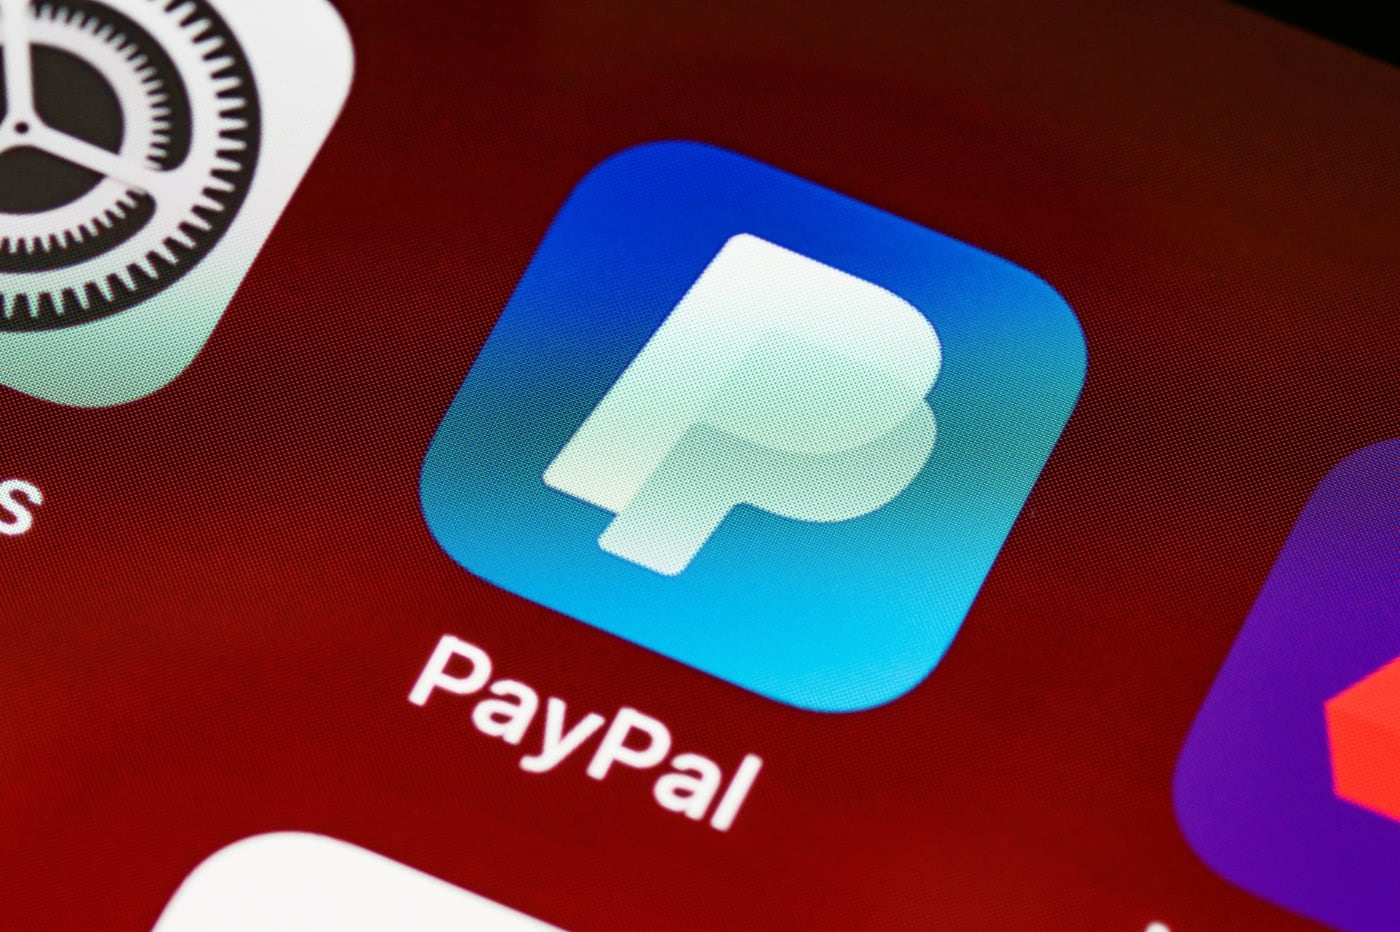 PayPal приостановил работу в России